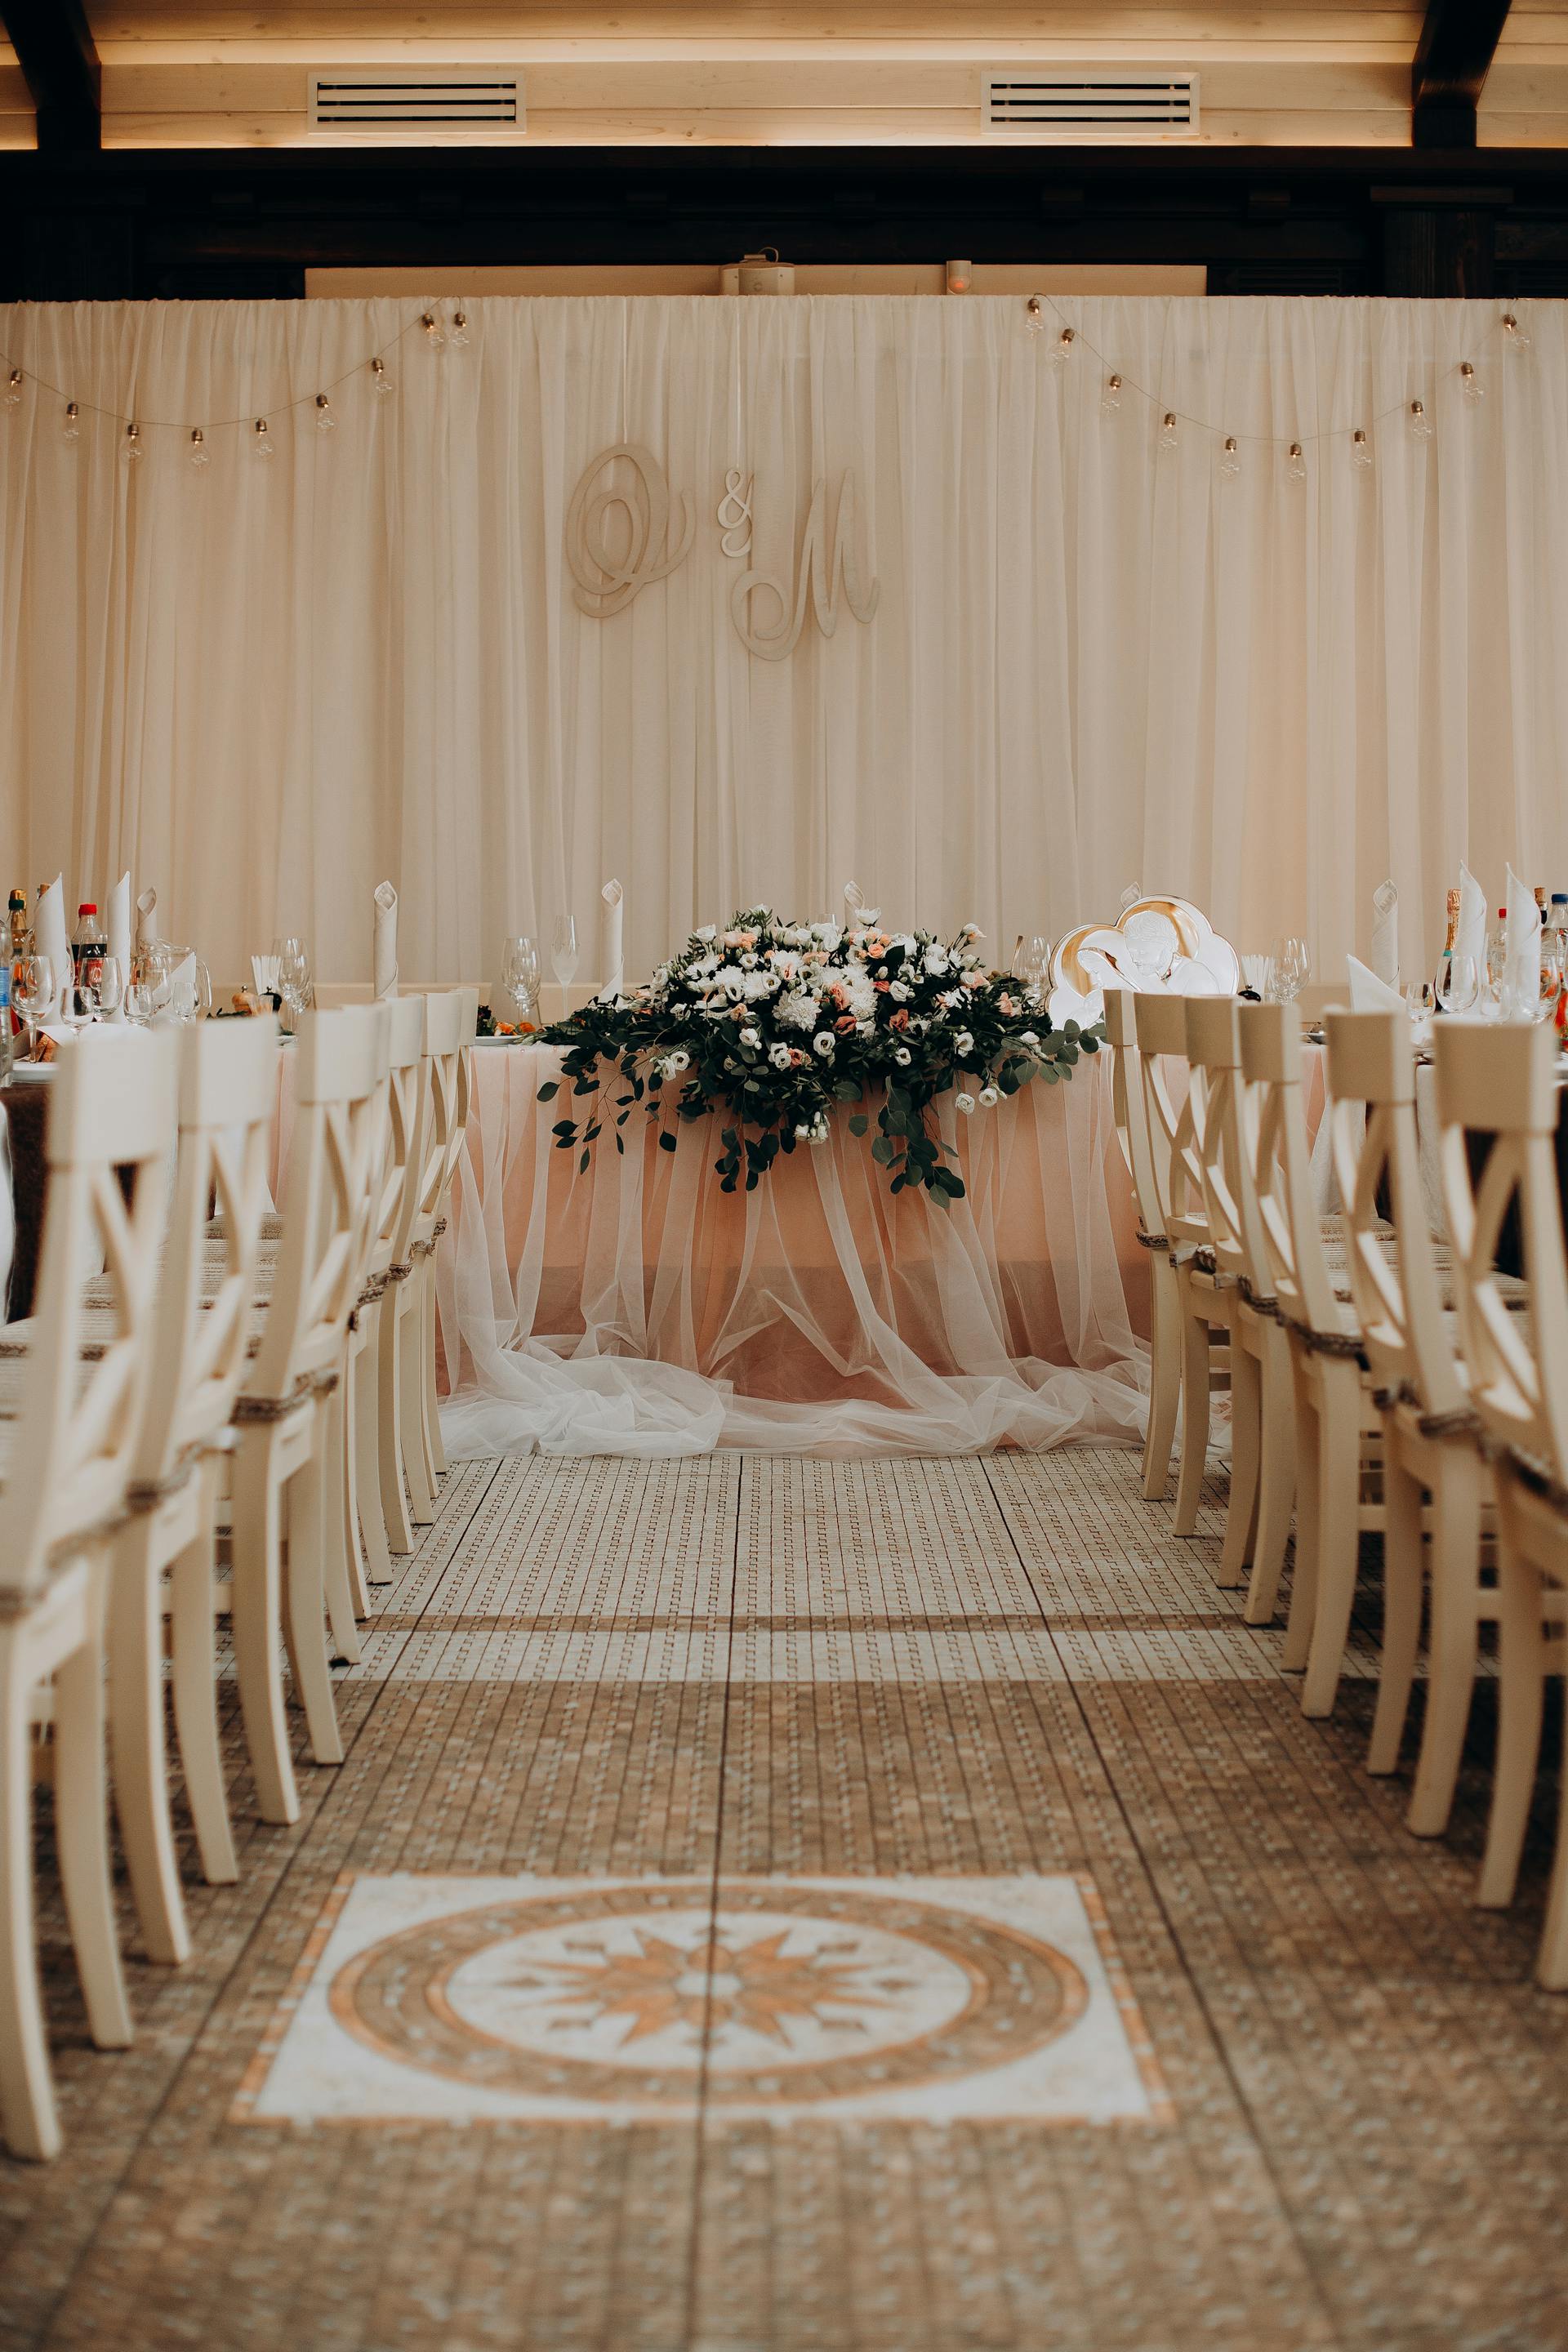 Une salle de mariage | Source : Pexels